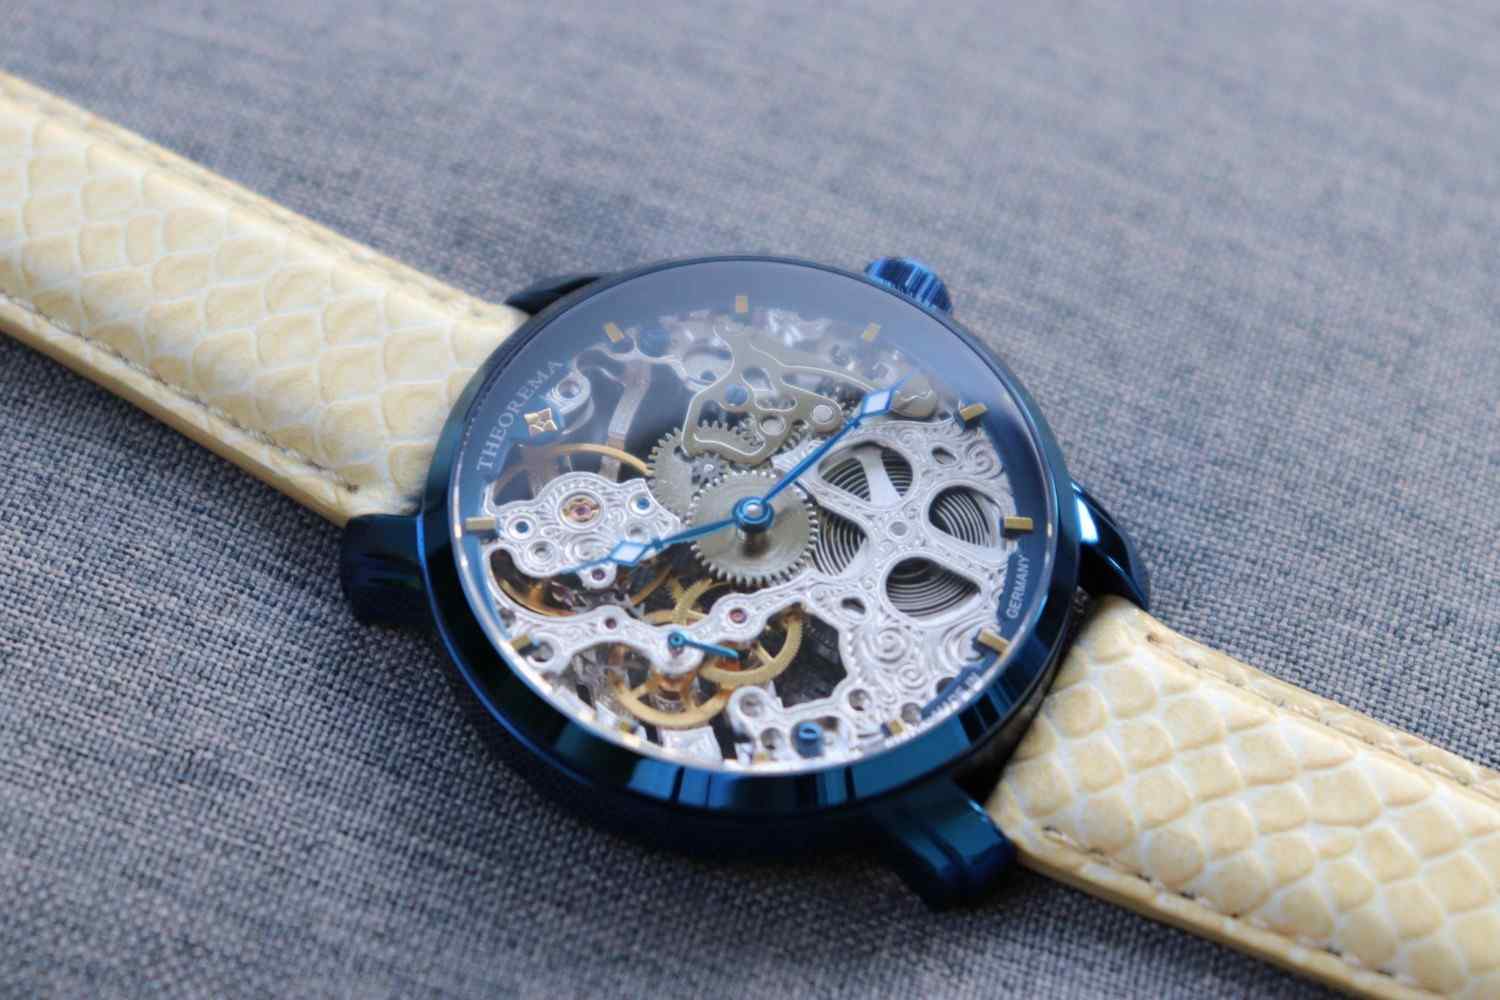 Tufina Venezia Theorema GM-118-5 Review | Engraved Skeleton Watch